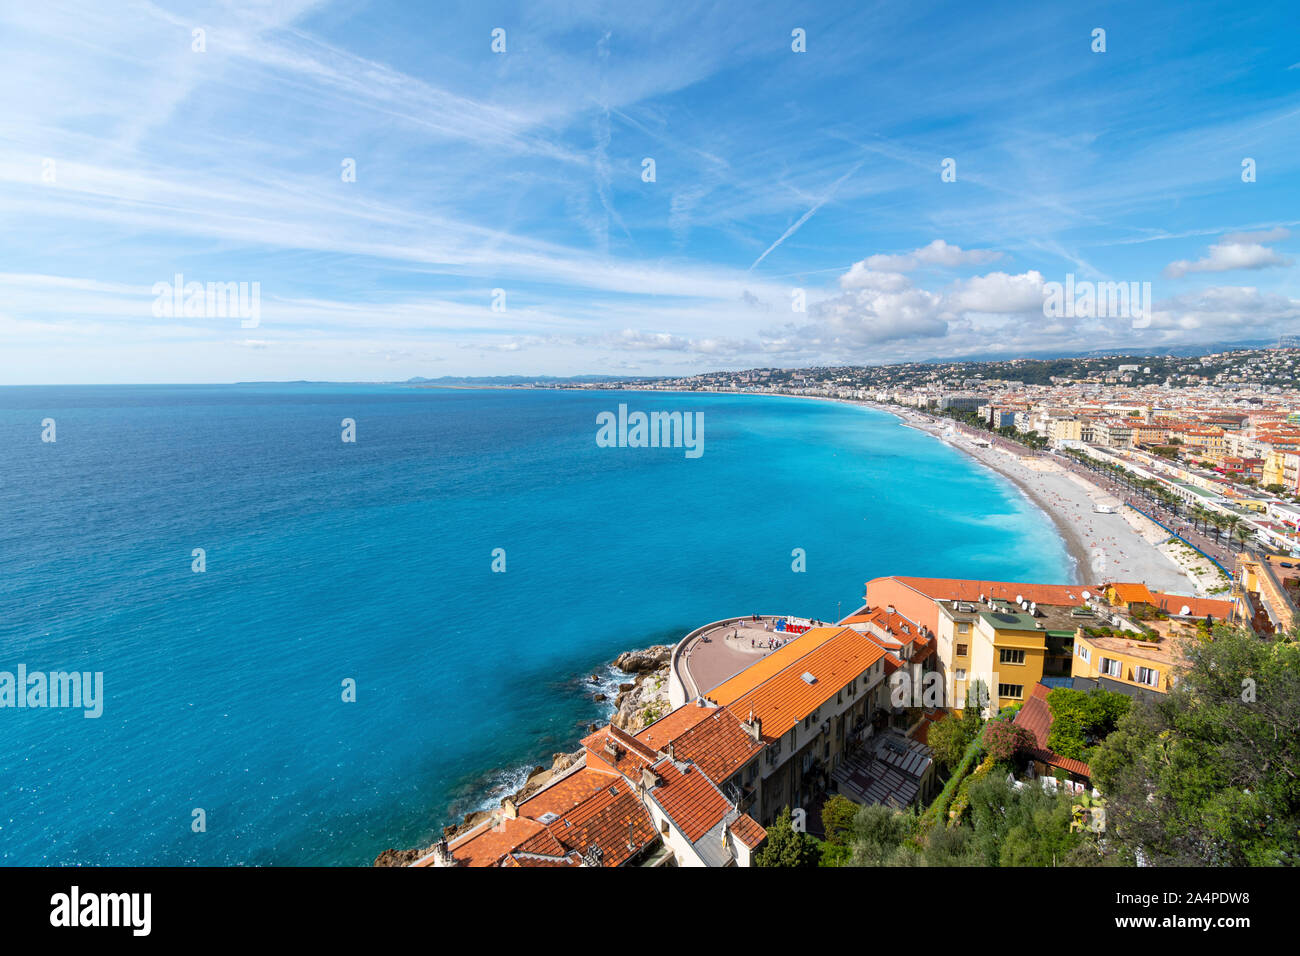 Ein Blick auf die Altstadt Vieux Nice, Ich liebe schöne Zeichen, Strand, Bucht der Engel und der Promenade vom Castle Hill an der Riviera in Nizza, Frankreich. Stockfoto